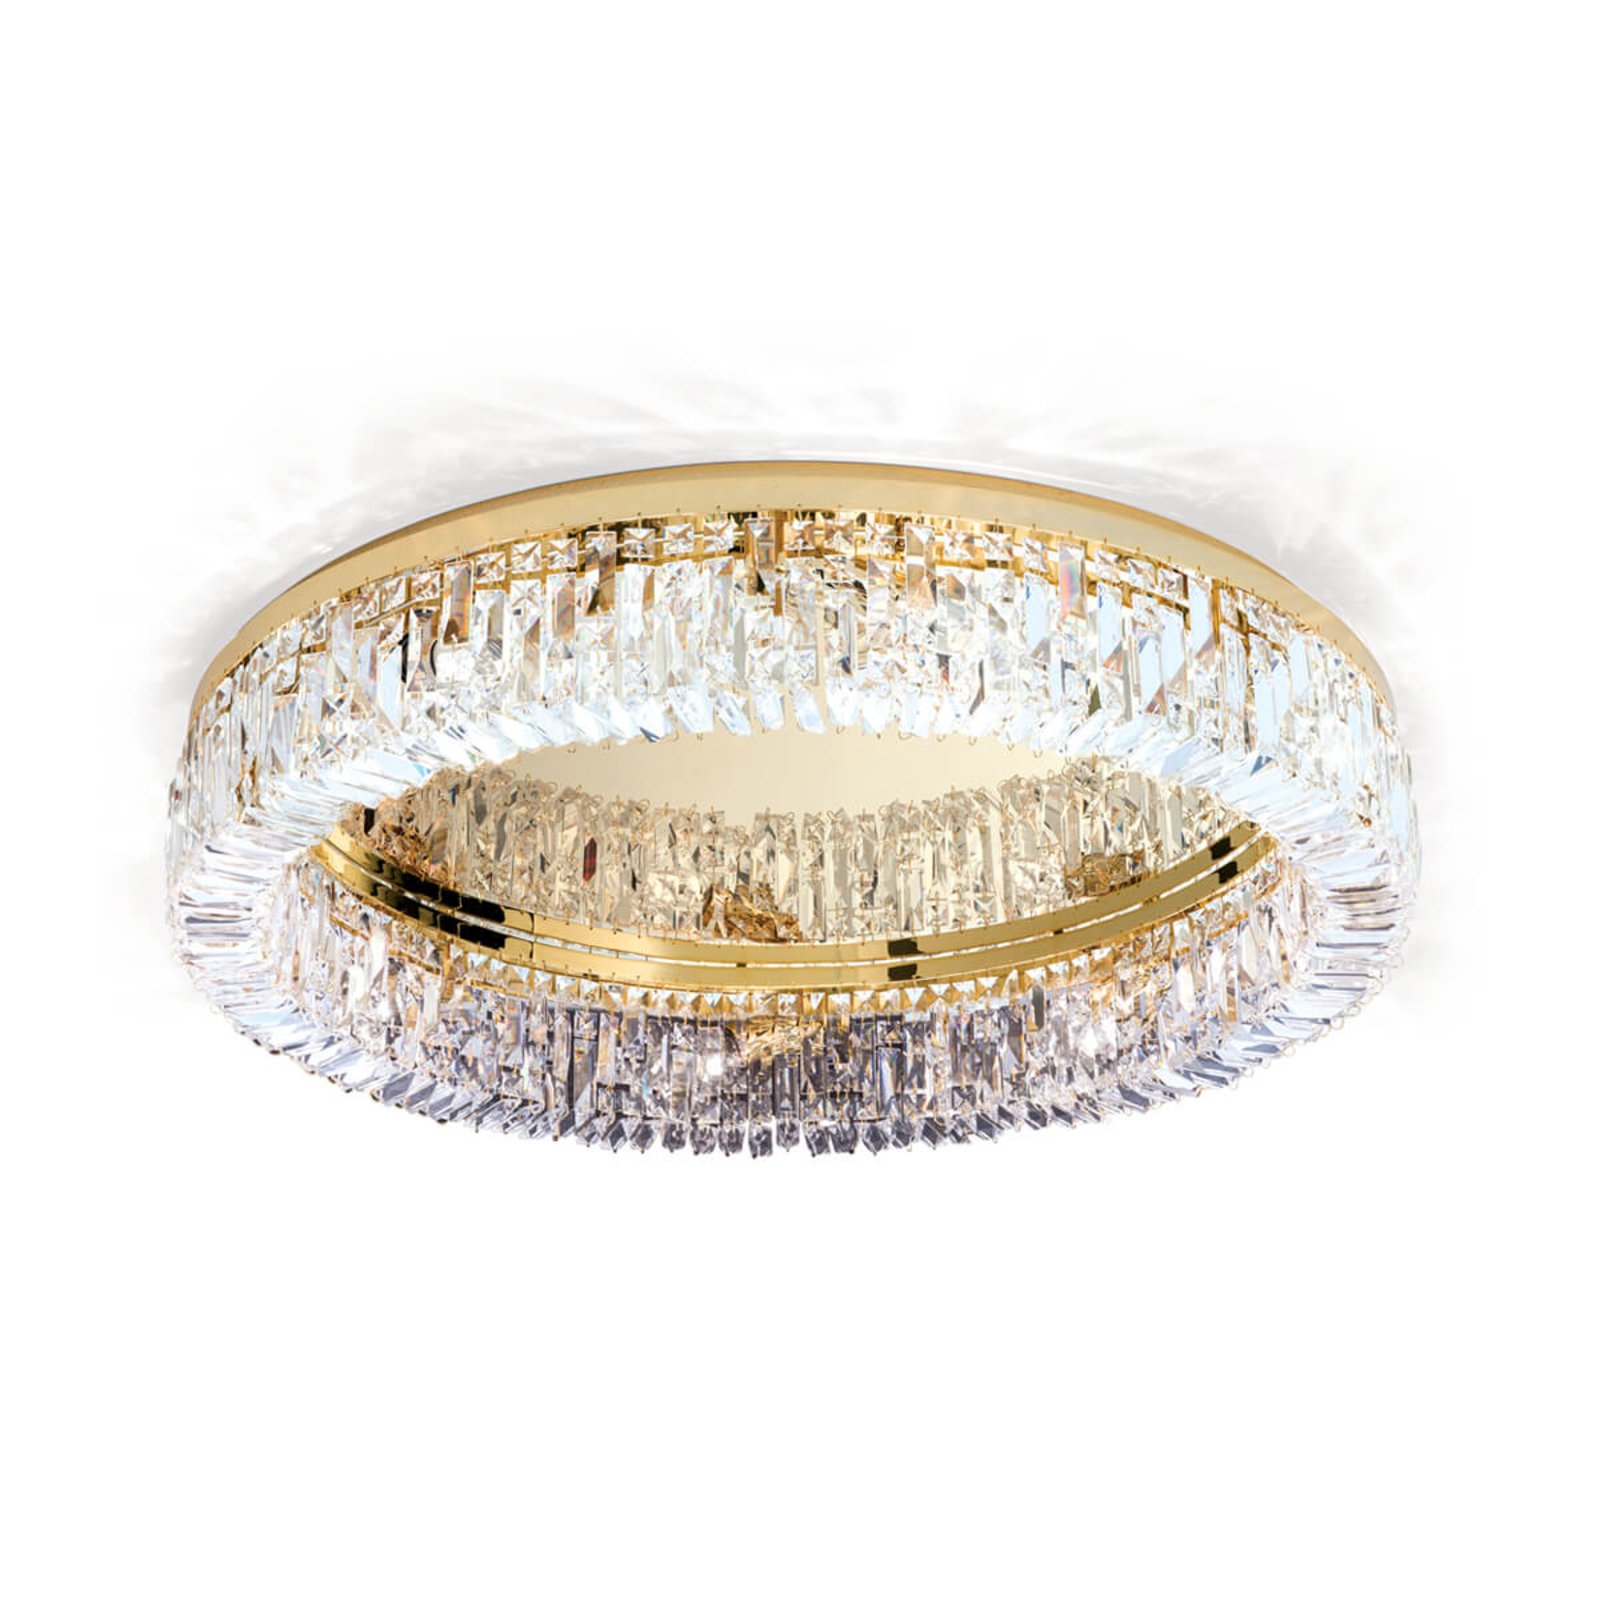 Kristály mennyezeti lámpagyűrű - 75 cm